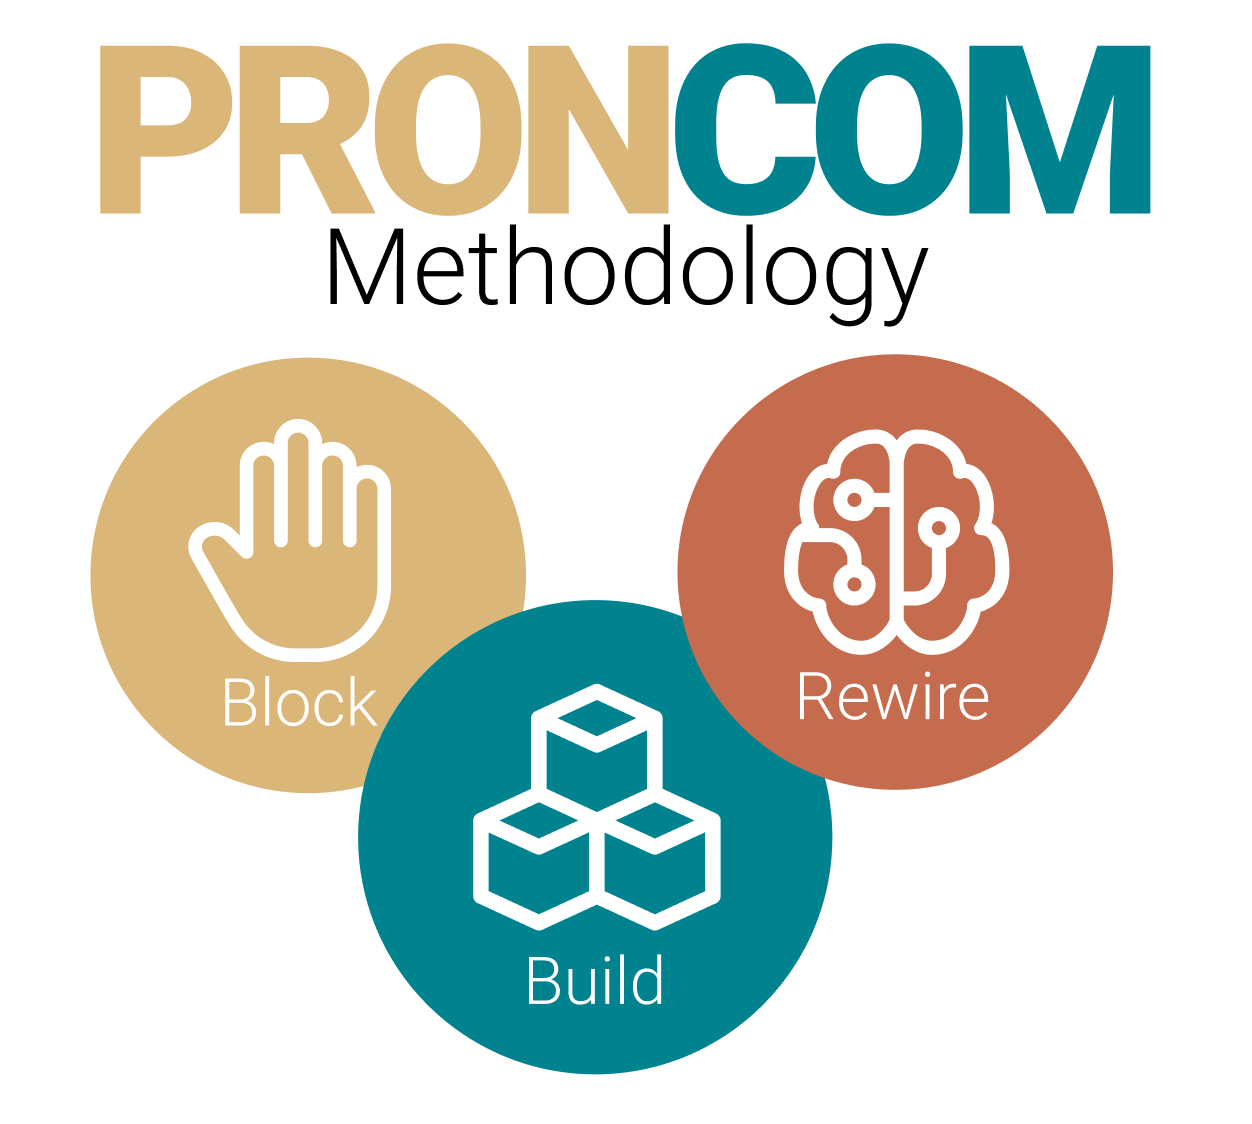 PRONCOM - Pronunciation & Communication Course